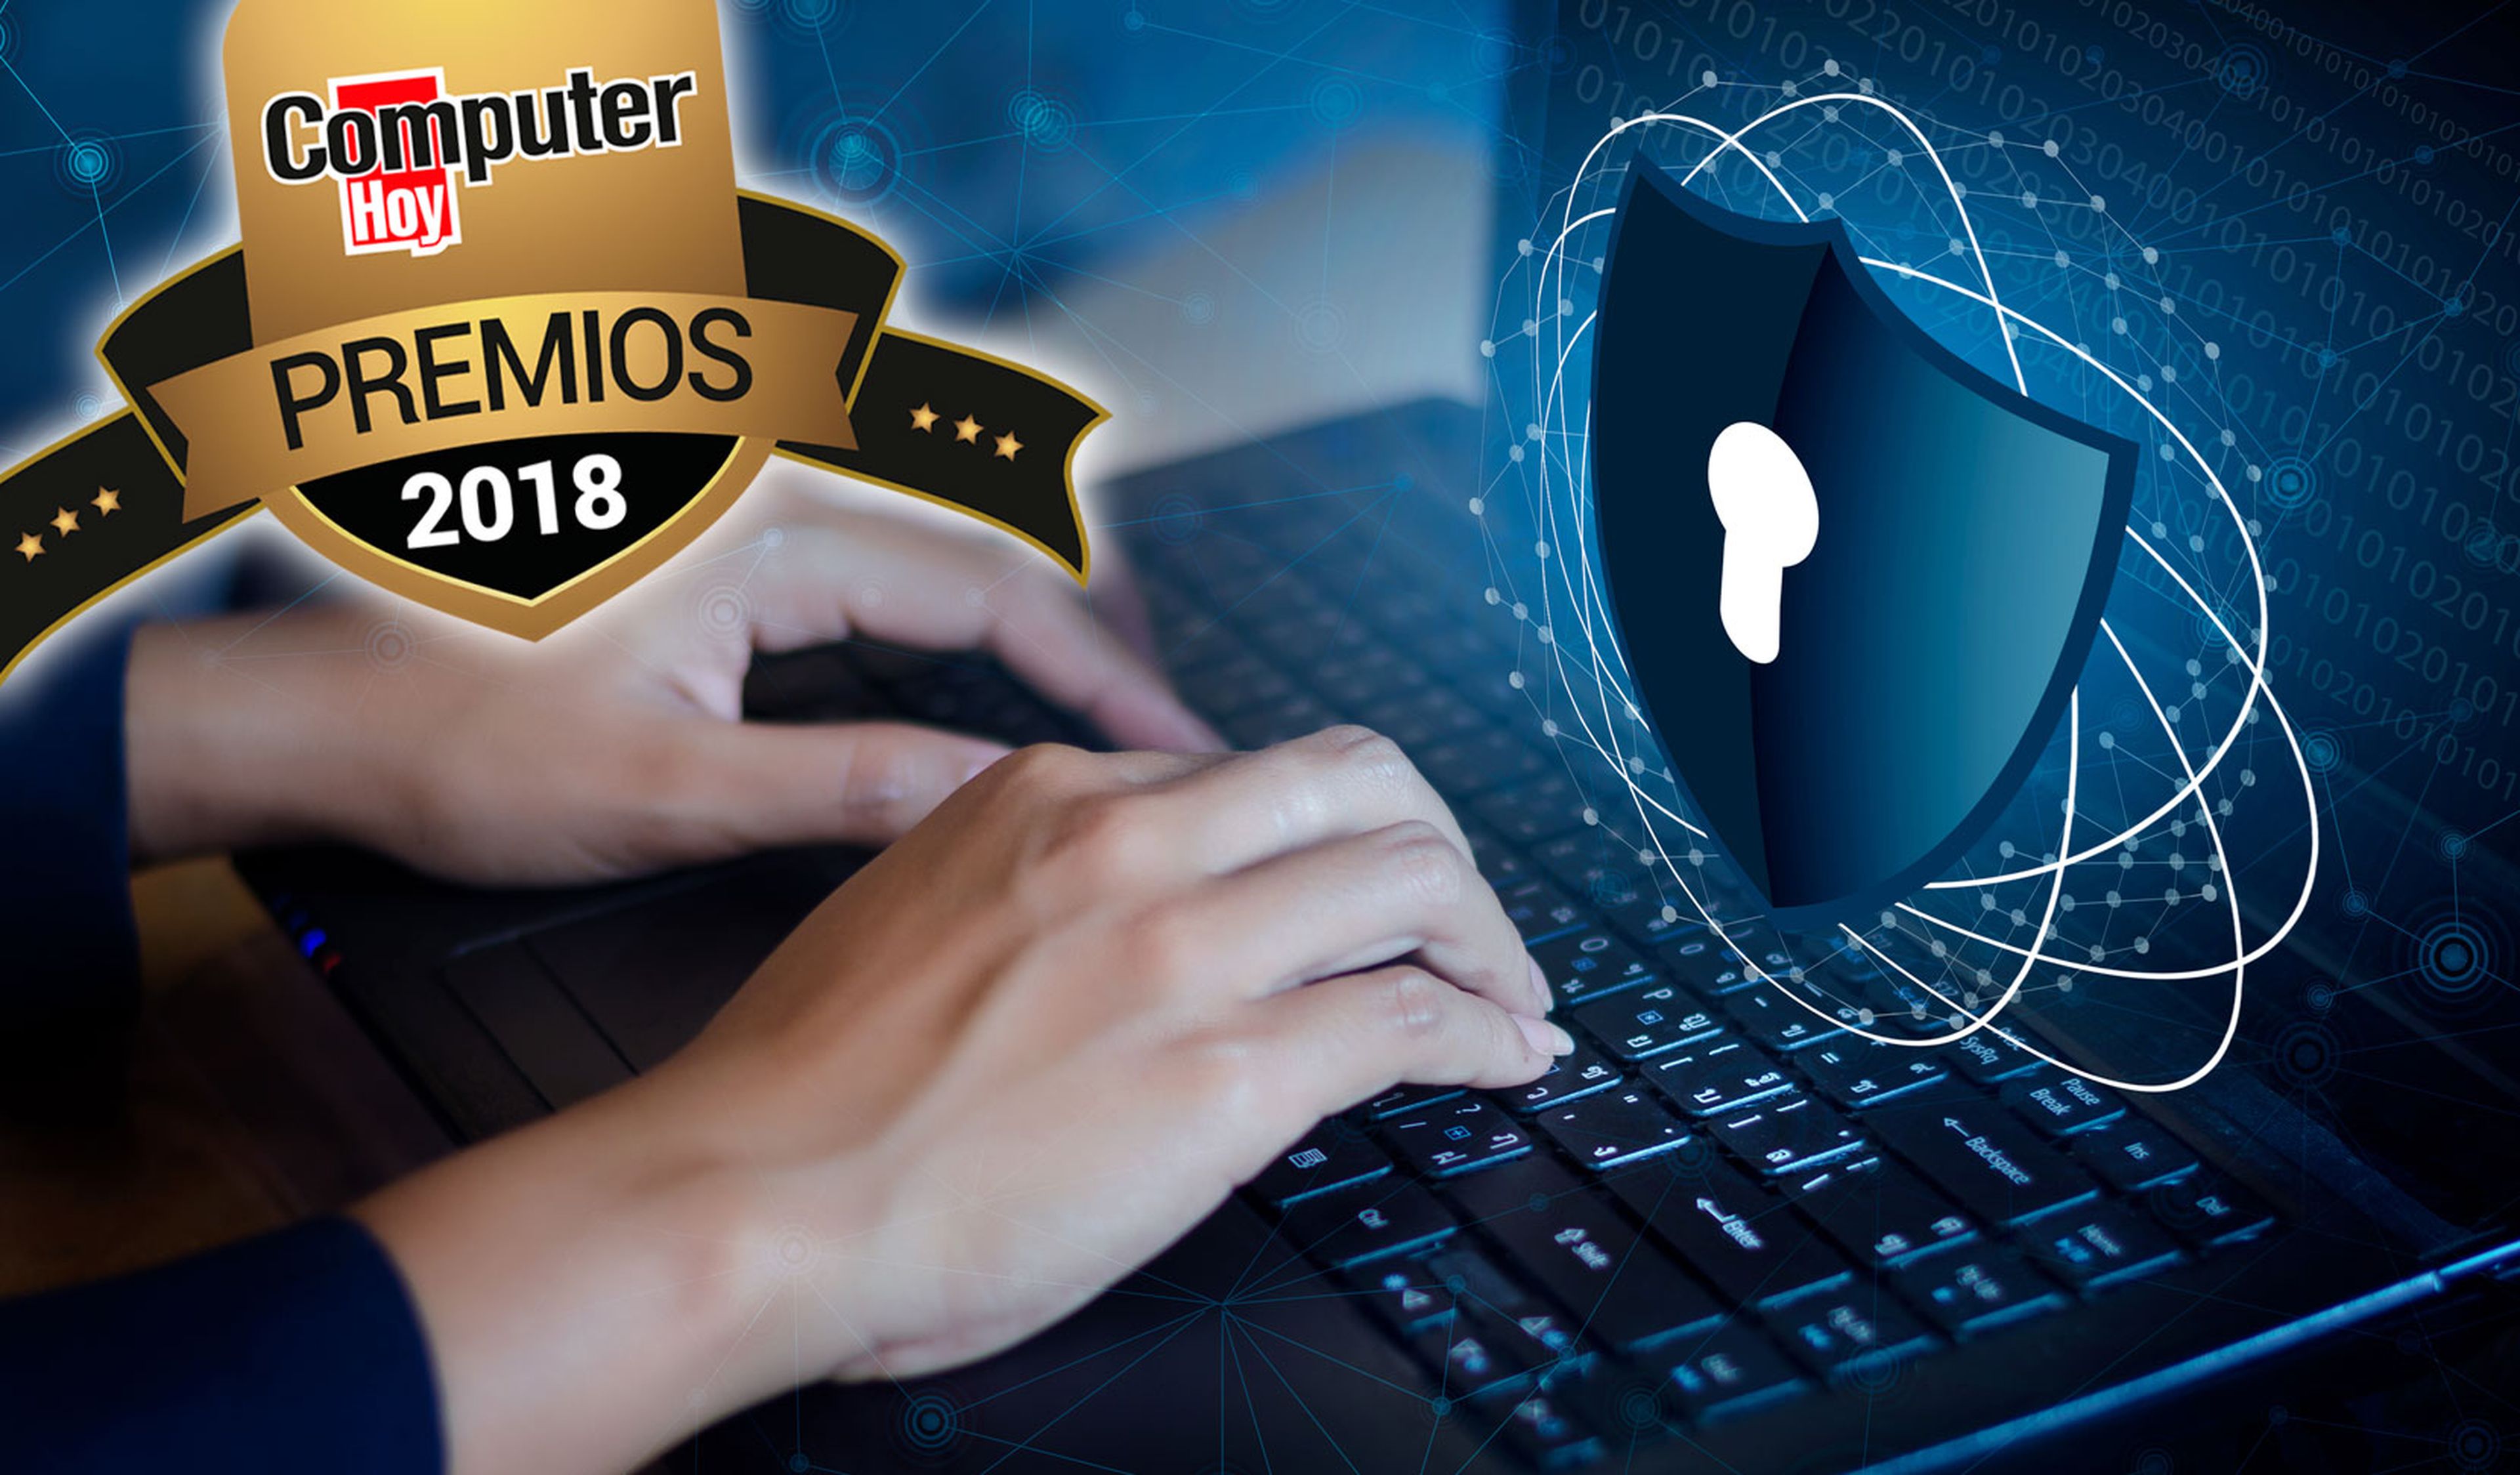 Premios ComputerHoy seguridad